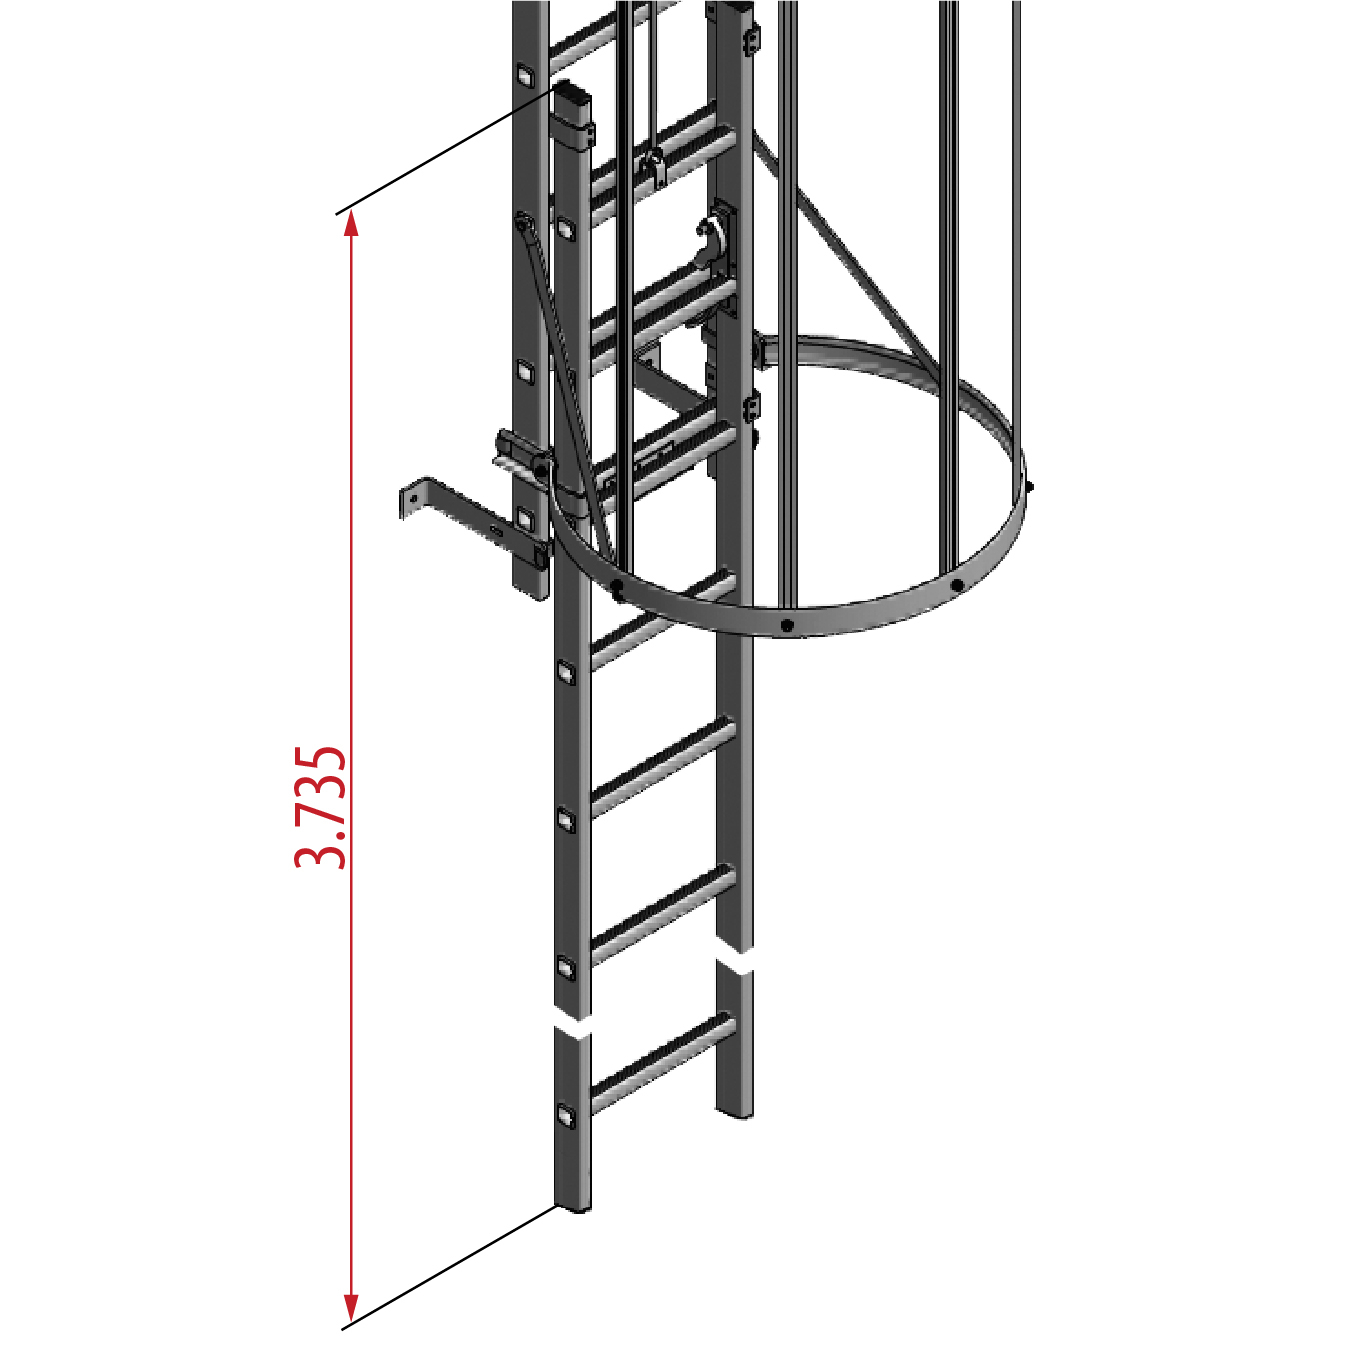 Einstieg einziehbar als Ersatzteil zum Nachrüsten an vorhandener Steigleiter - Seilzugbedienung von unten